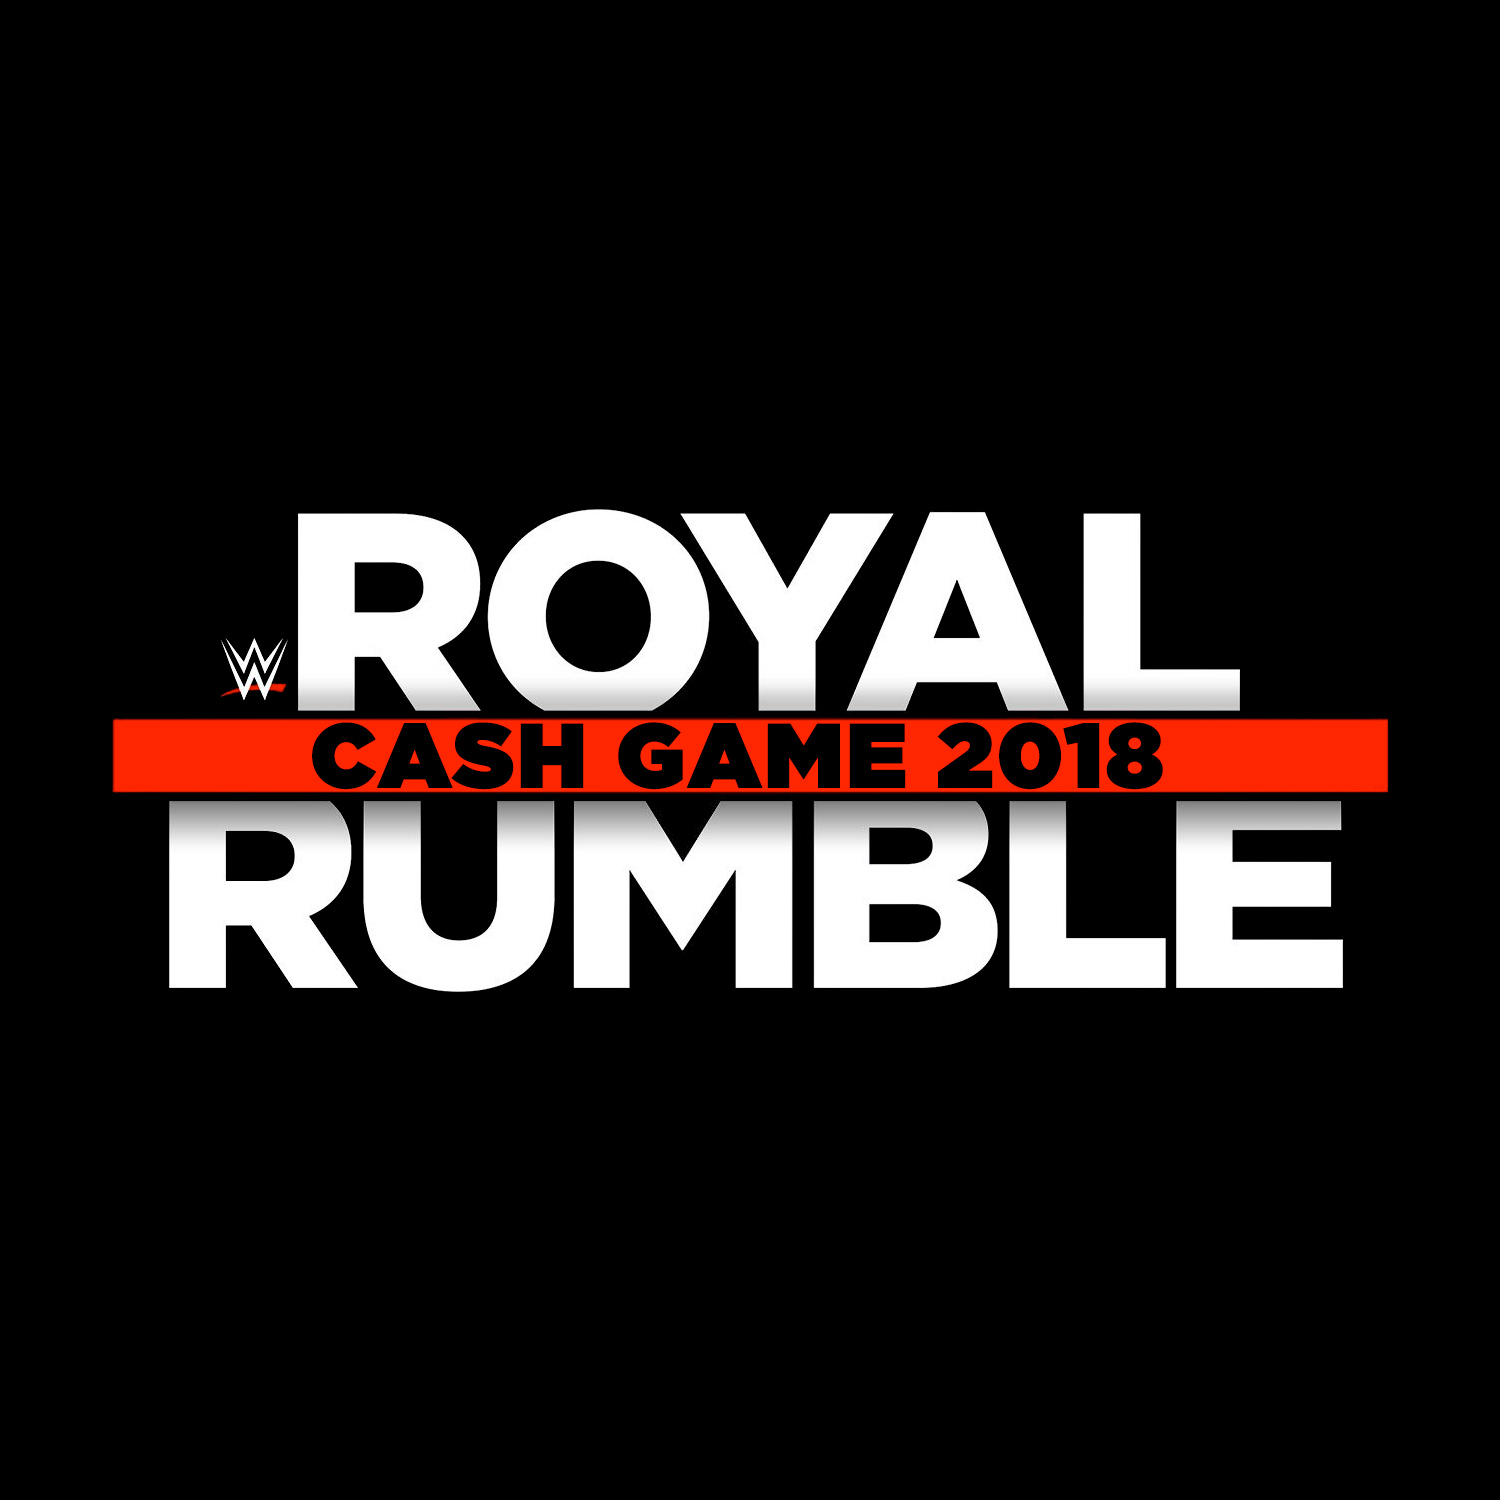 Royal Rumble Cash Game 2018